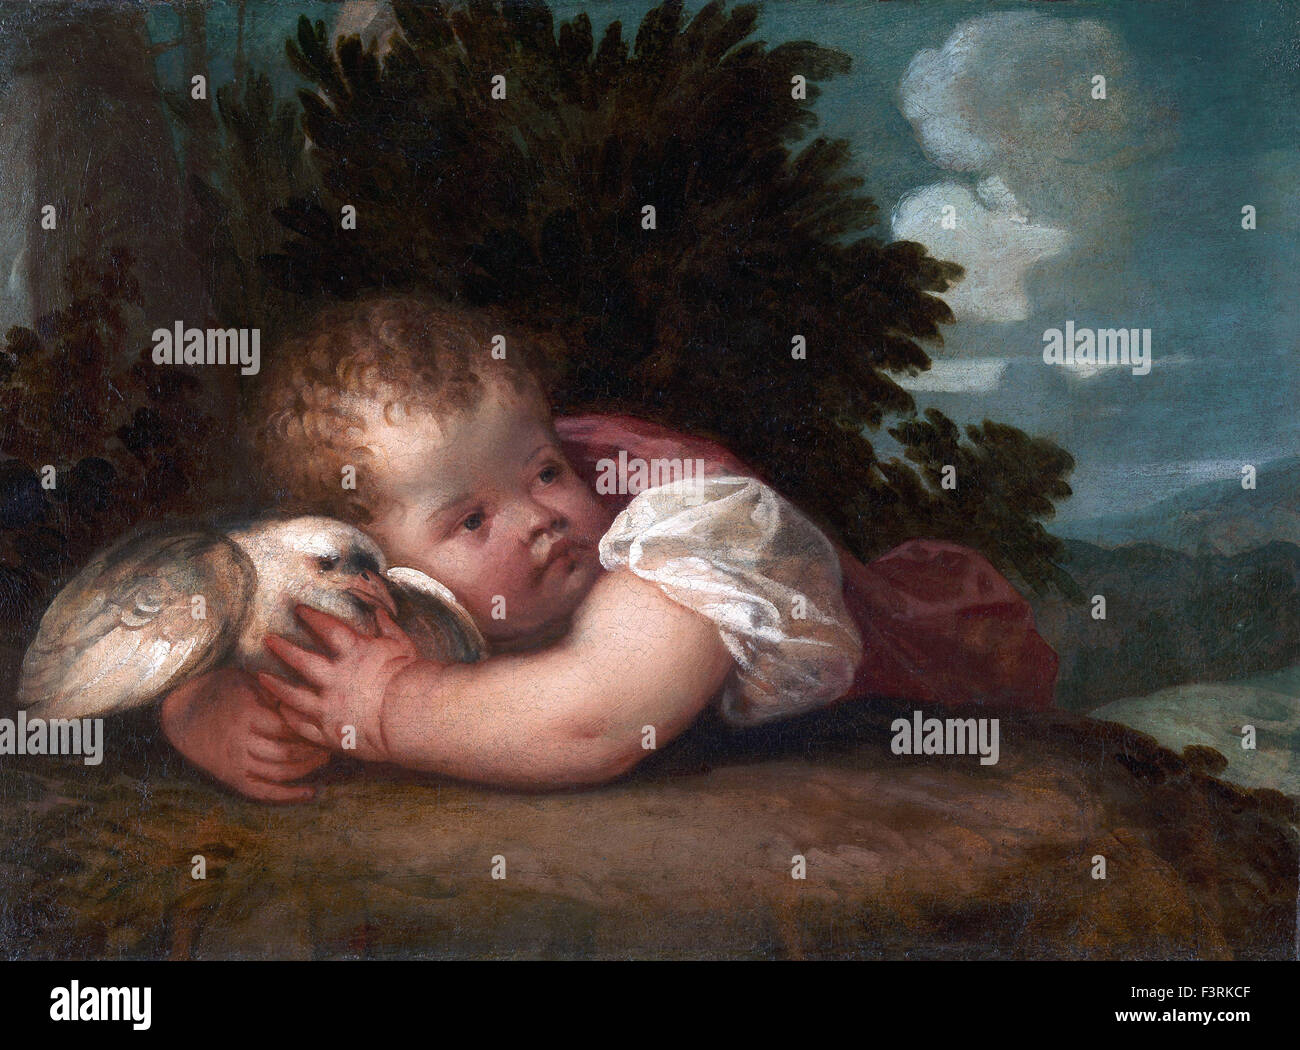 Tiziano Vecellio - Titian - A Boy with a Bird Stock Photo